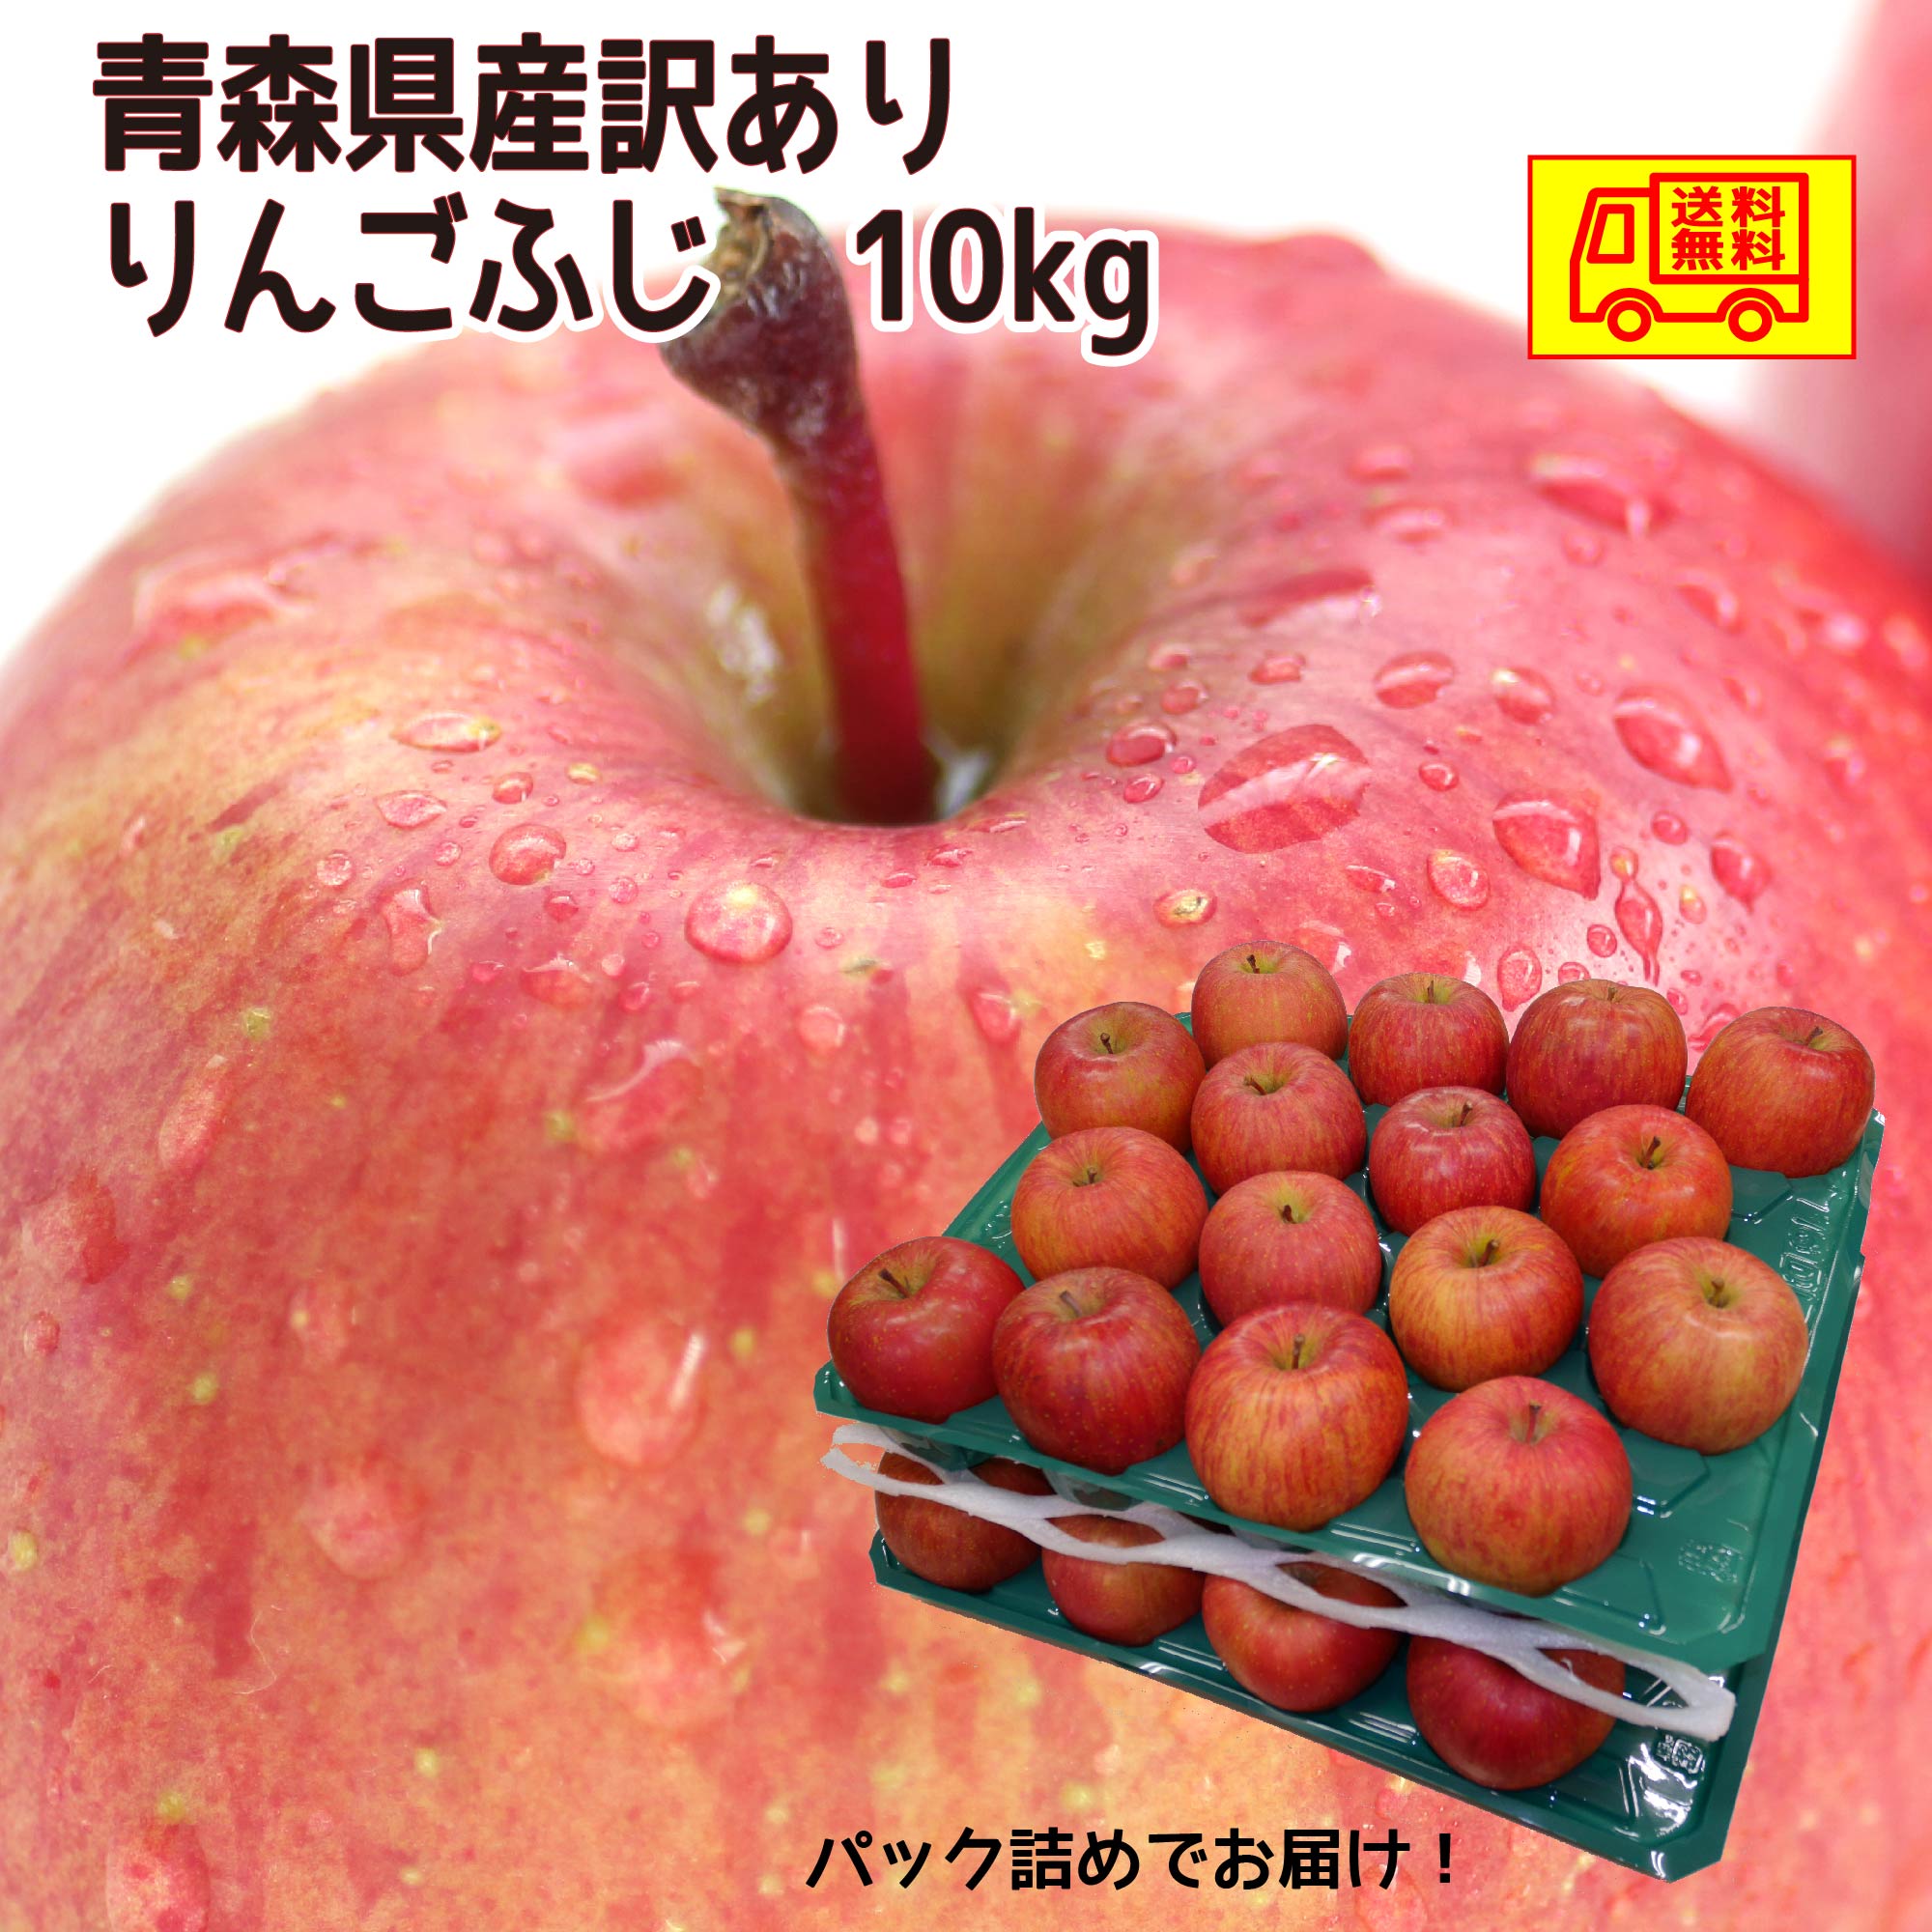 【ふるさと納税】自然の恵みいっぱいの葉とらずふじりんご 大玉 約5kg fz22-030 リンゴ 林檎 フルーツ 果物 お取り寄せ 送料無料